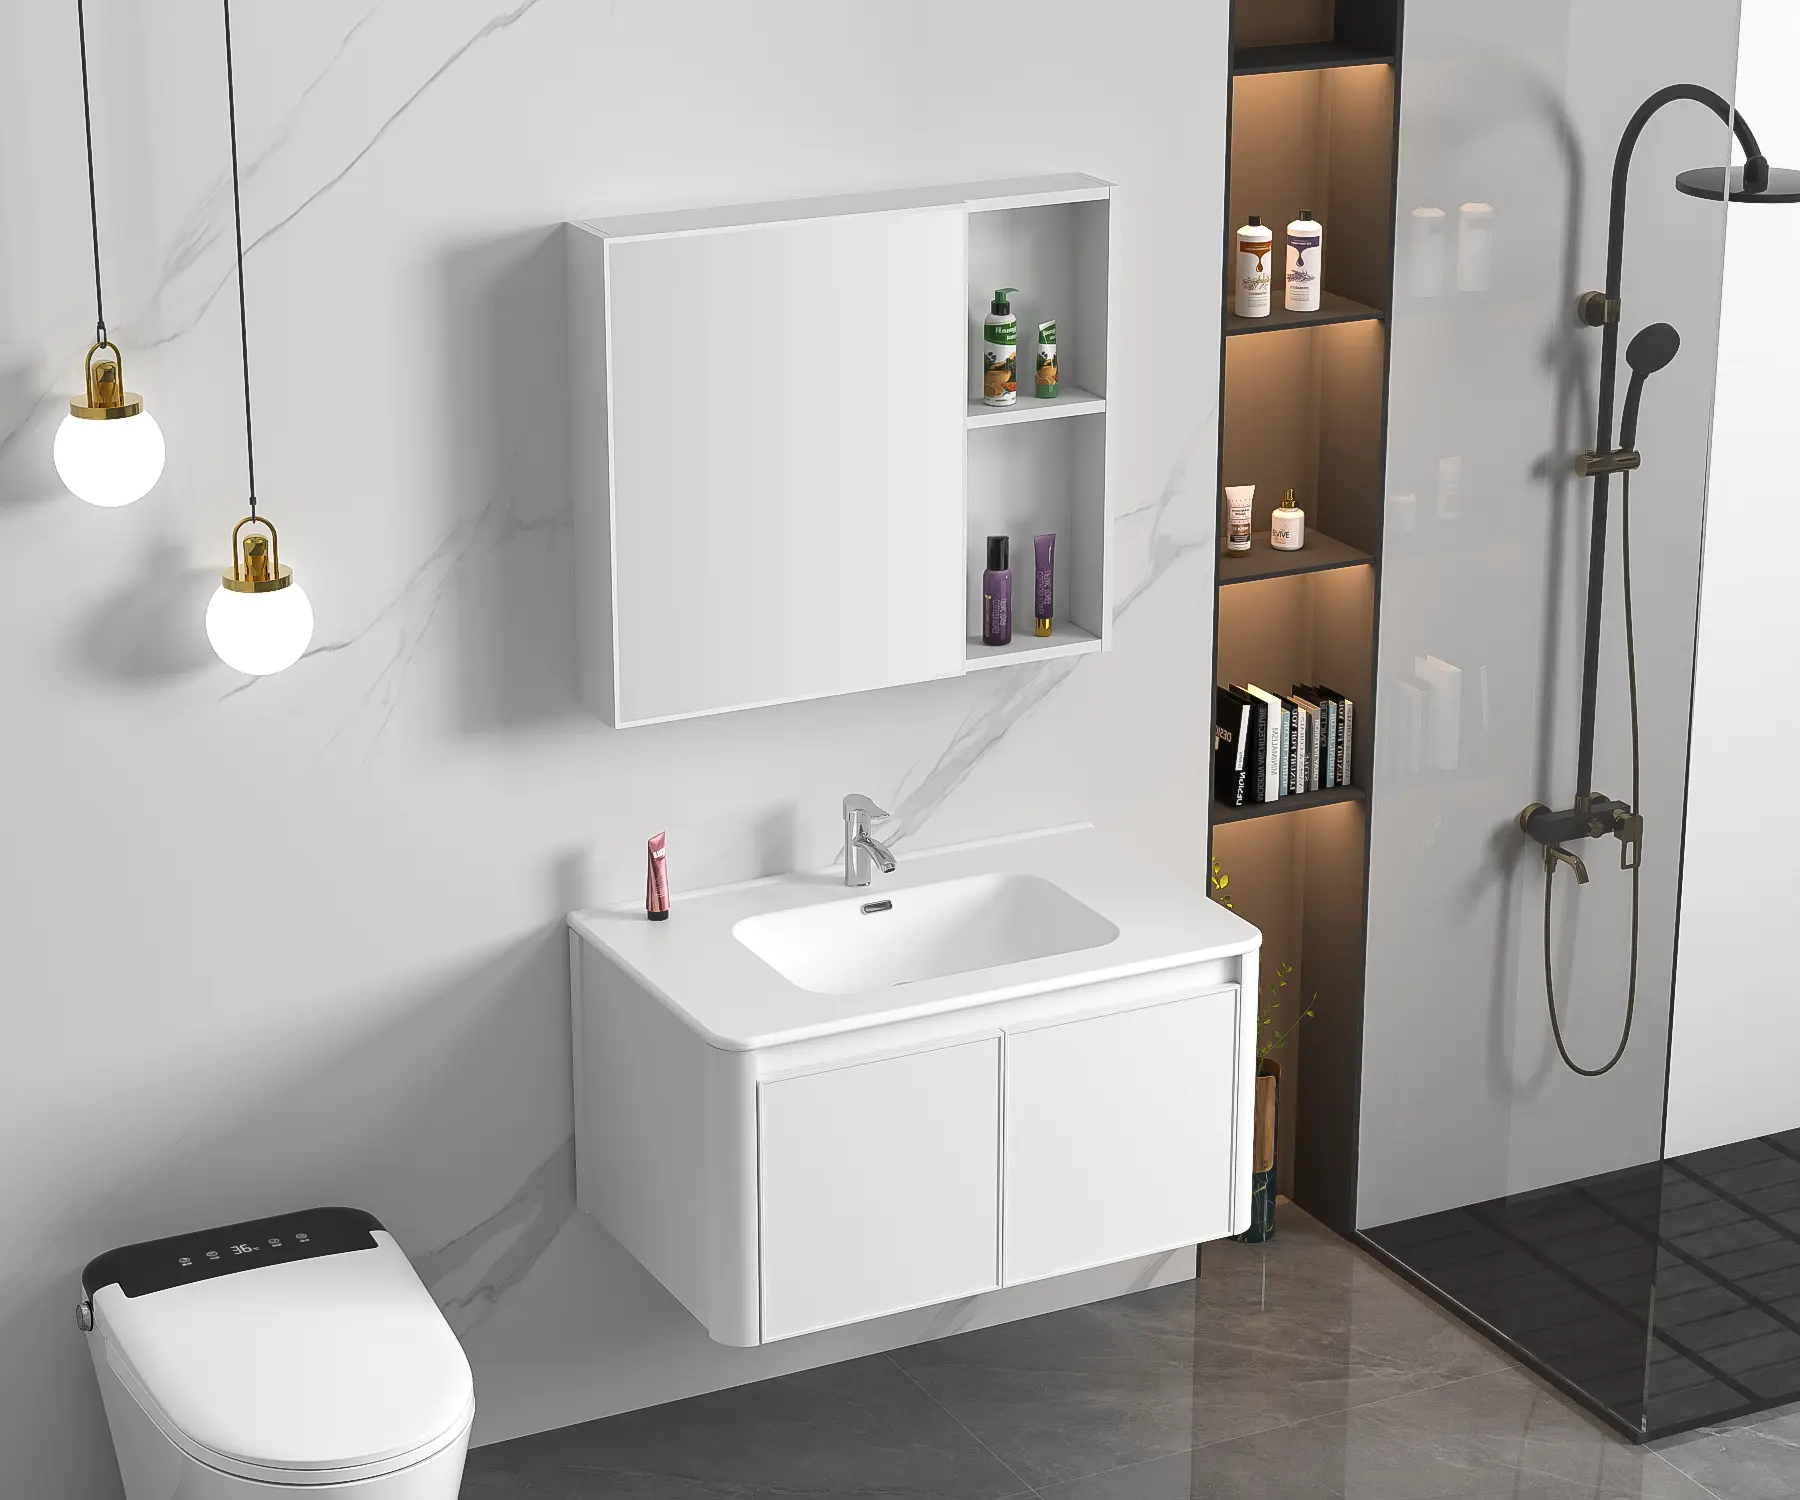 Samiyah 새로운 현대 스타일 벽걸이 형 알루미늄 방수 완료 욕실 화장대 캐비닛 거울 + 세라믹 분지 싱크 사용자 정의